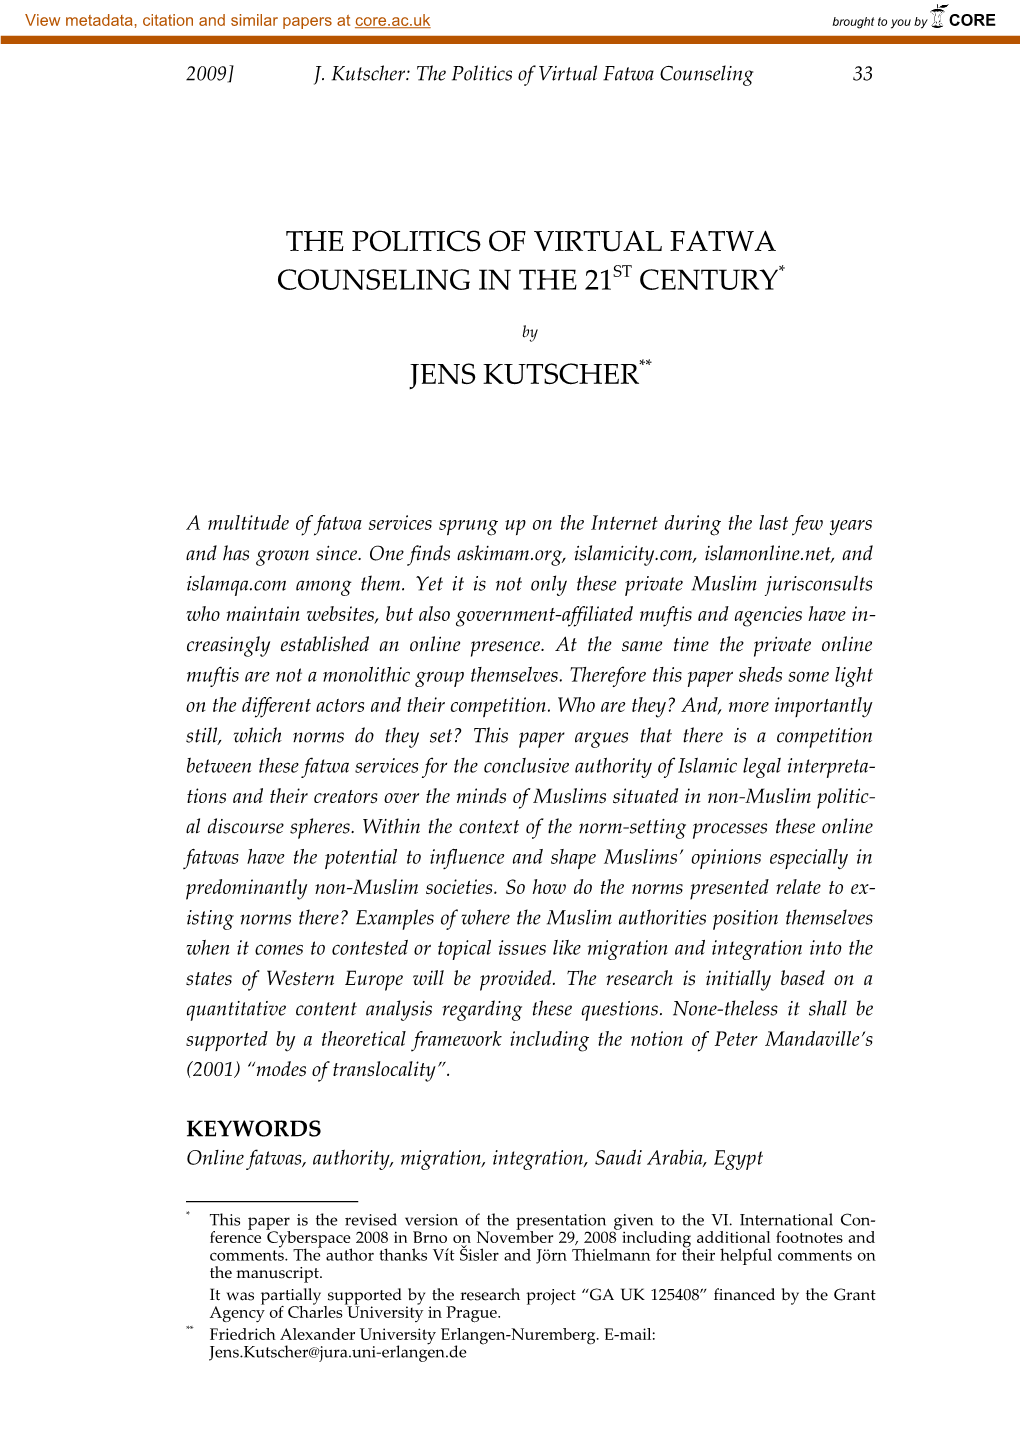 J. Kutscher: the Politics of Virtual Fatwa Counseling 33